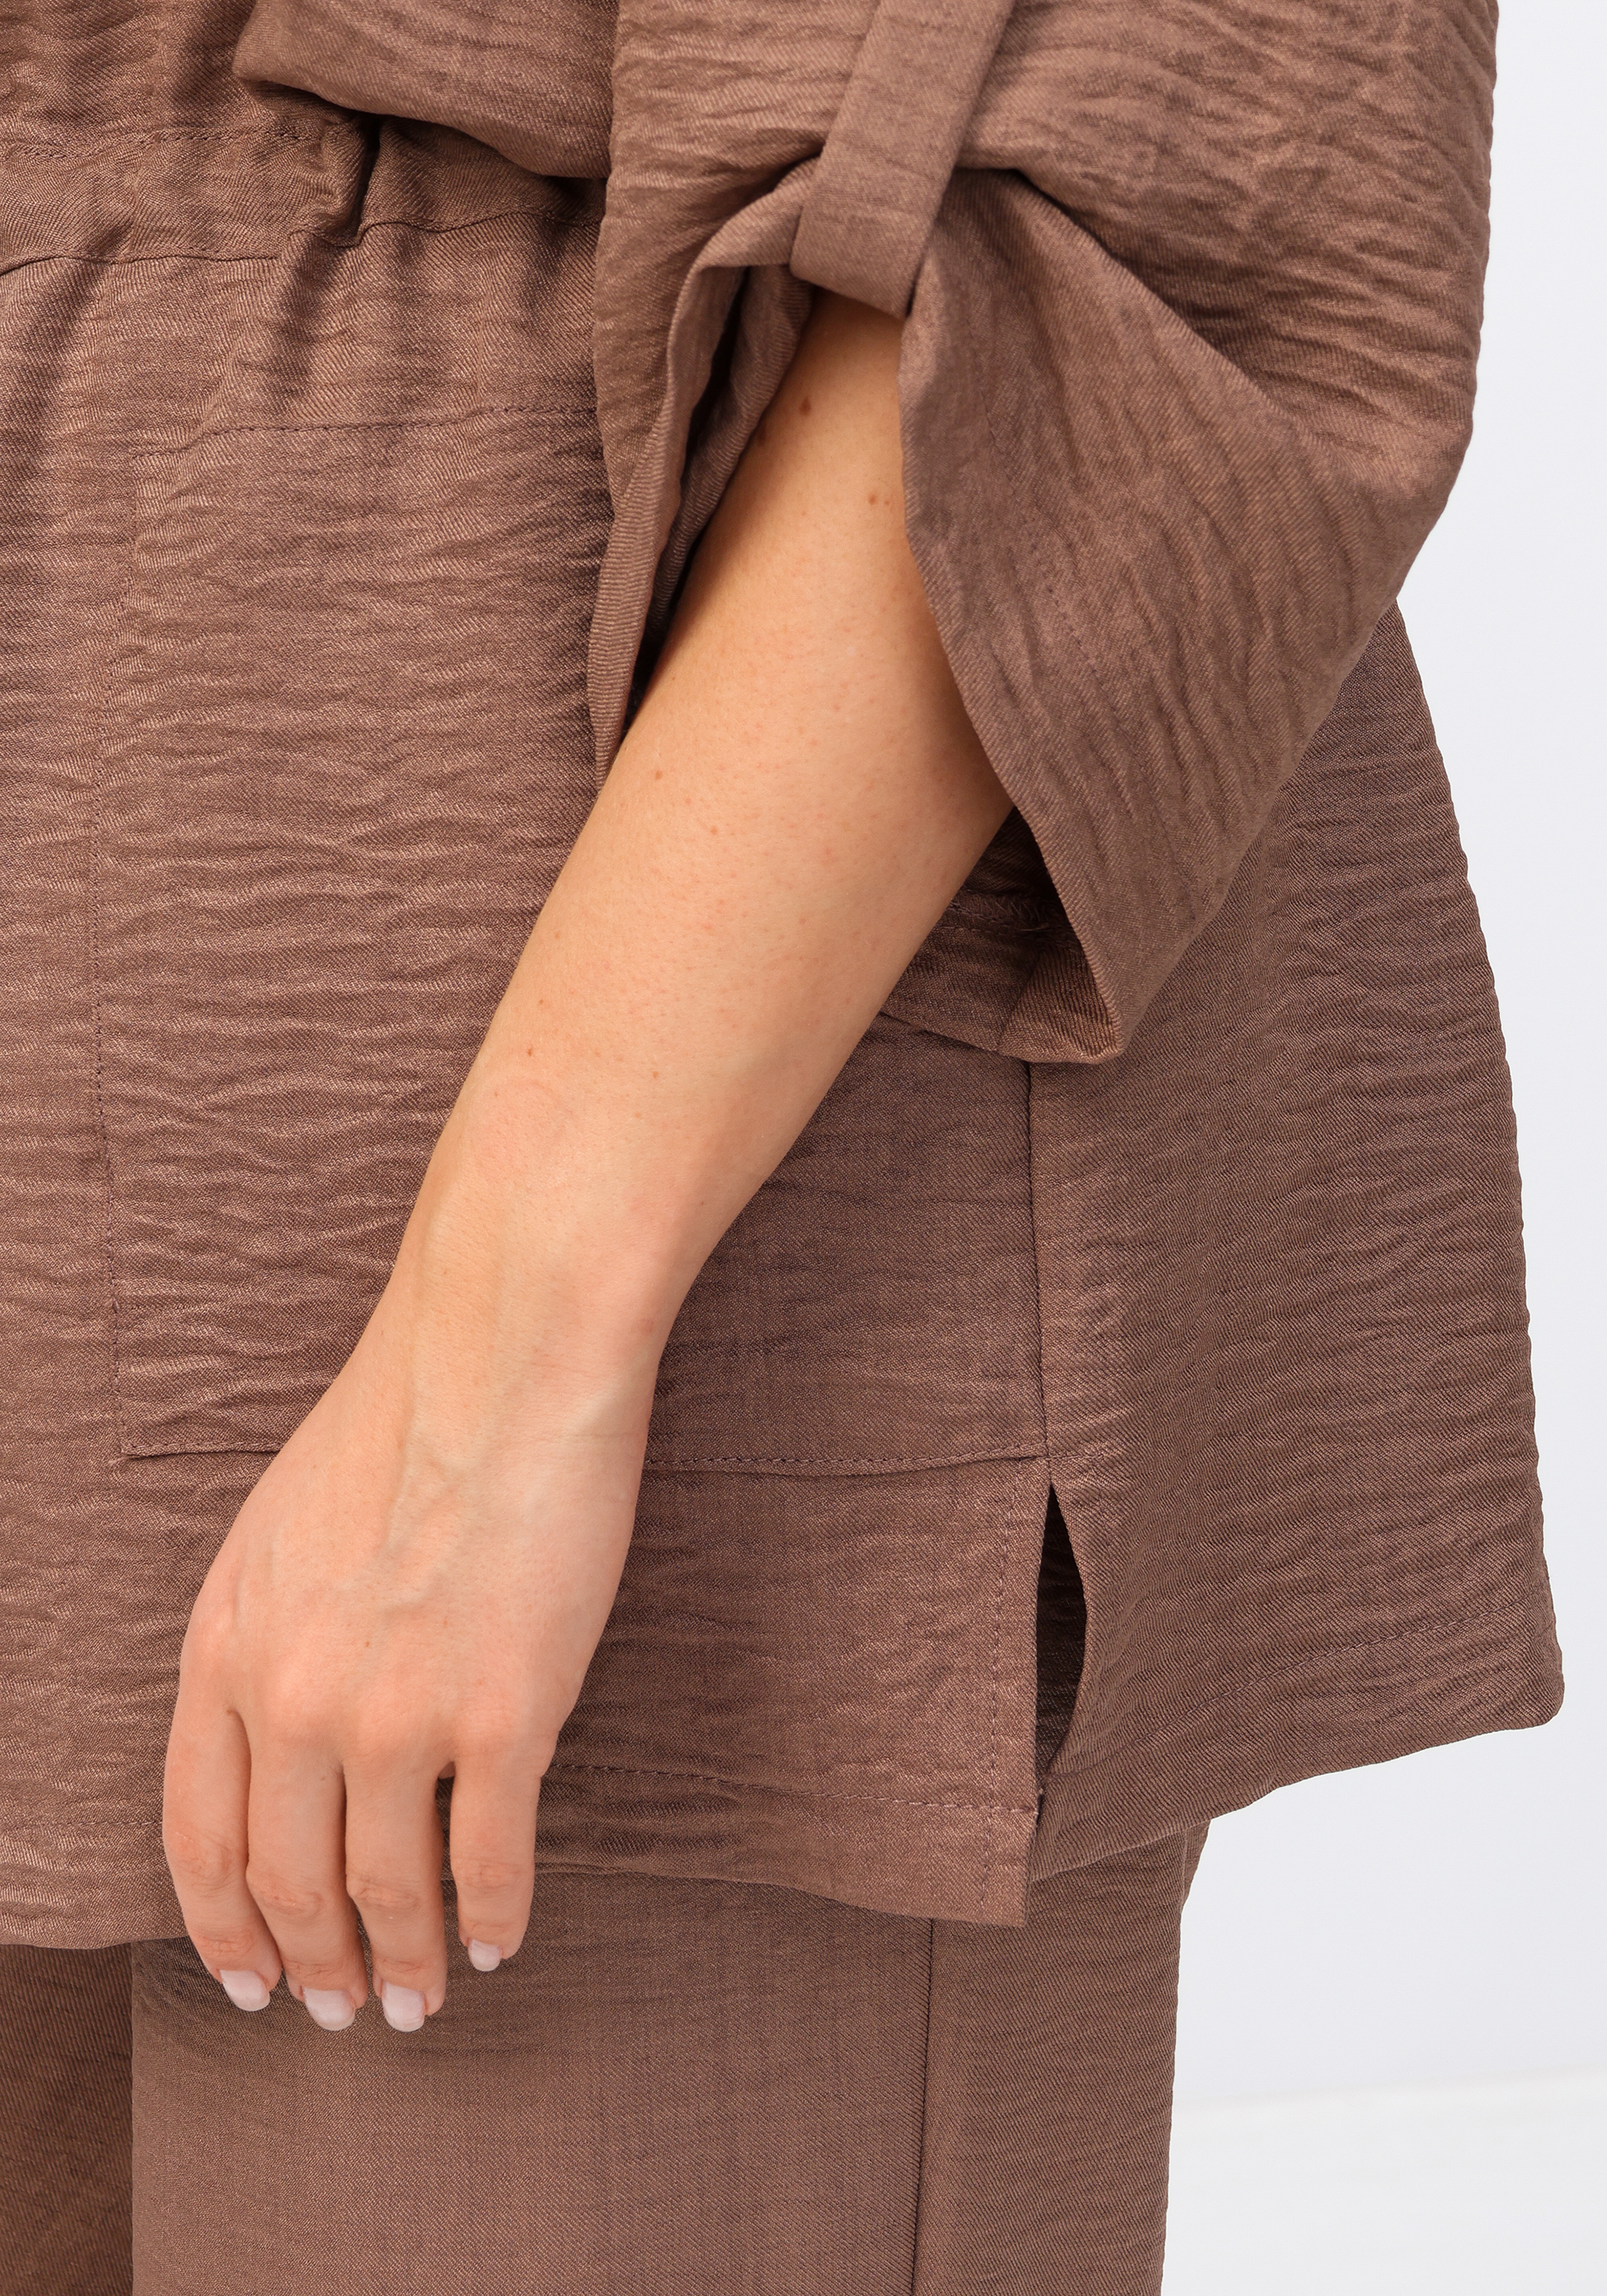 Жакет на пуговицах с кулиской по талии VeraVo, размер 60, цвет коричневый - фото 6